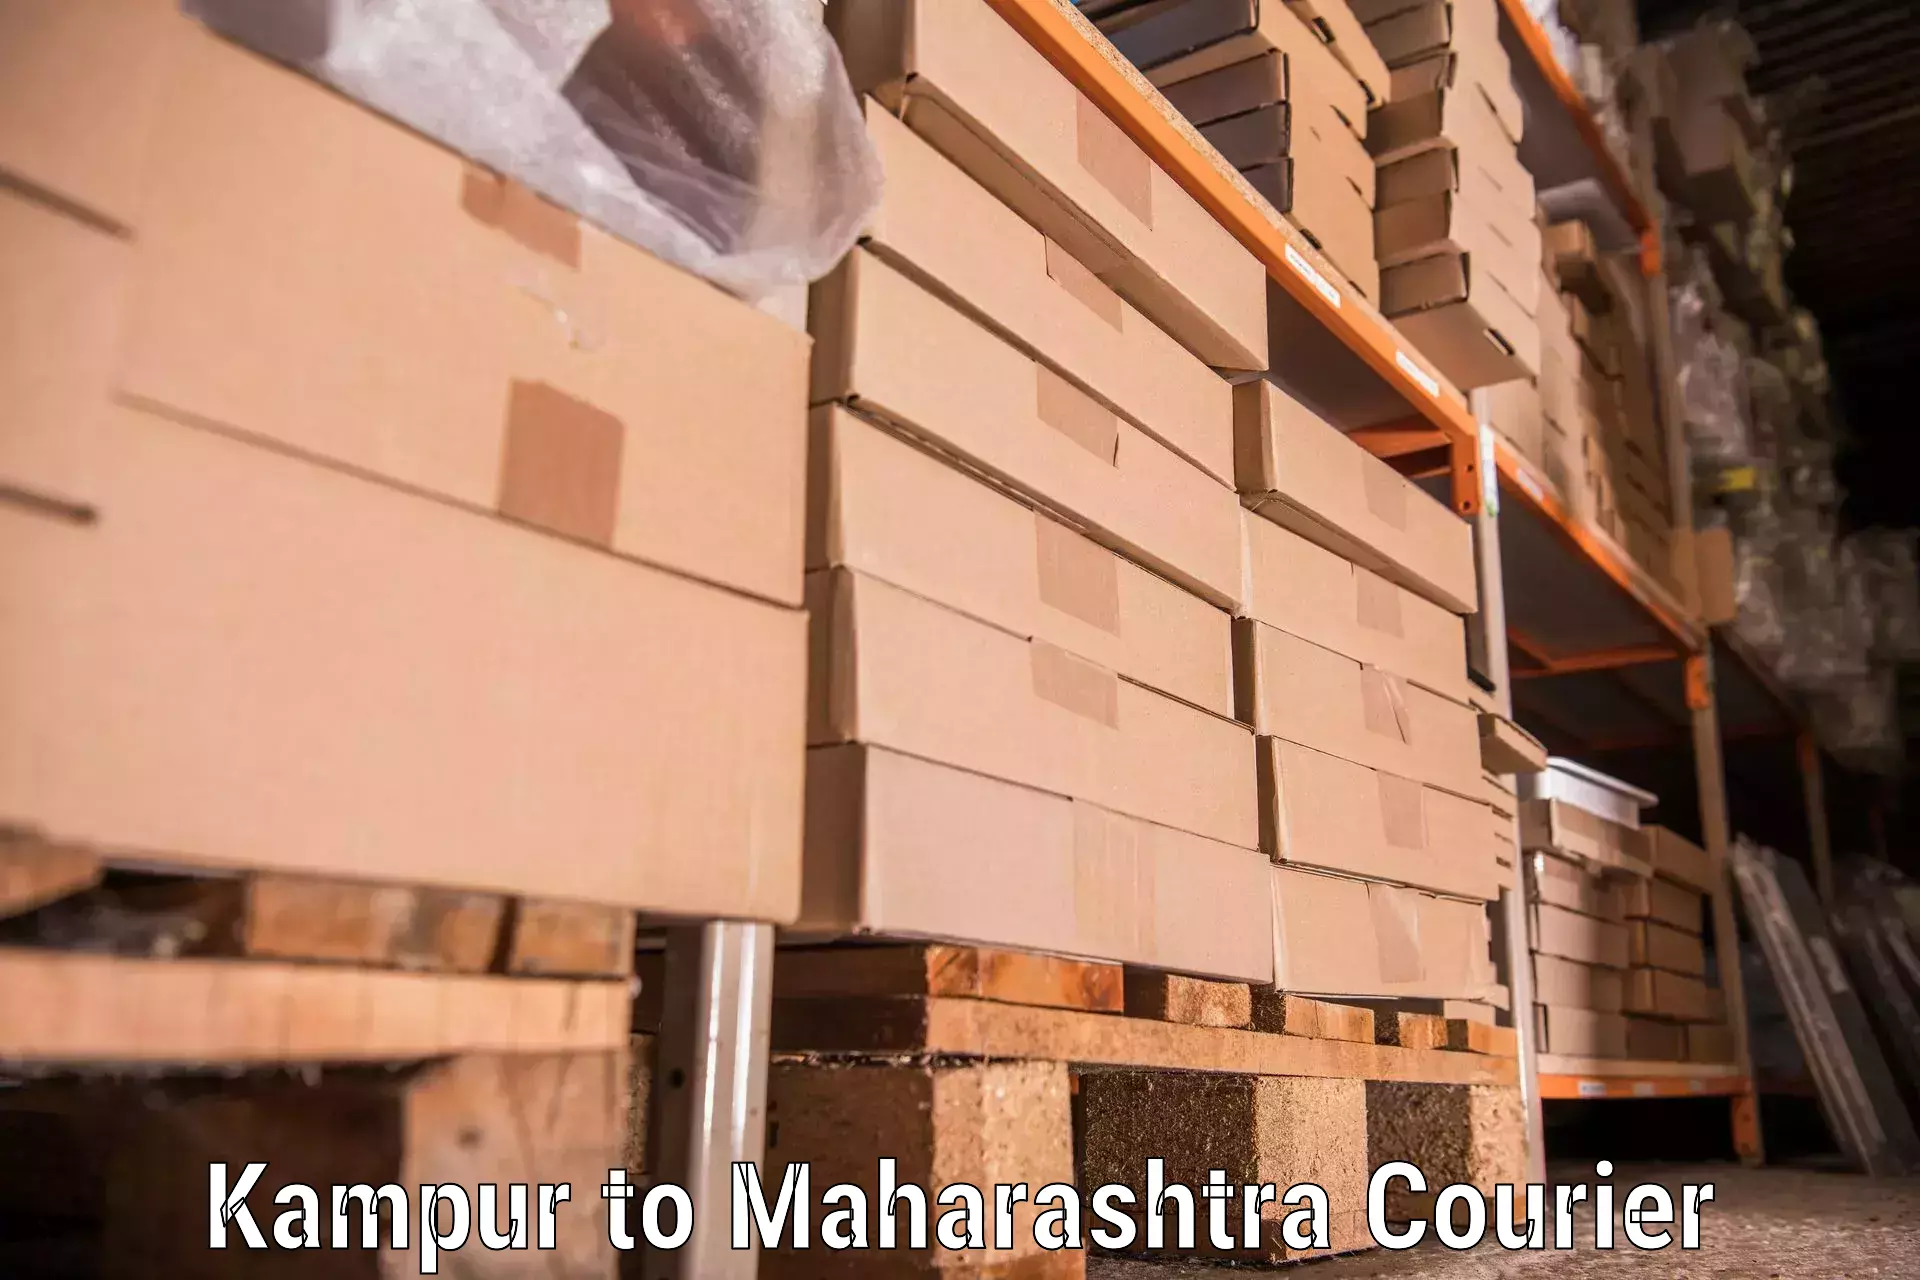 Specialized moving company Kampur to Maharashtra